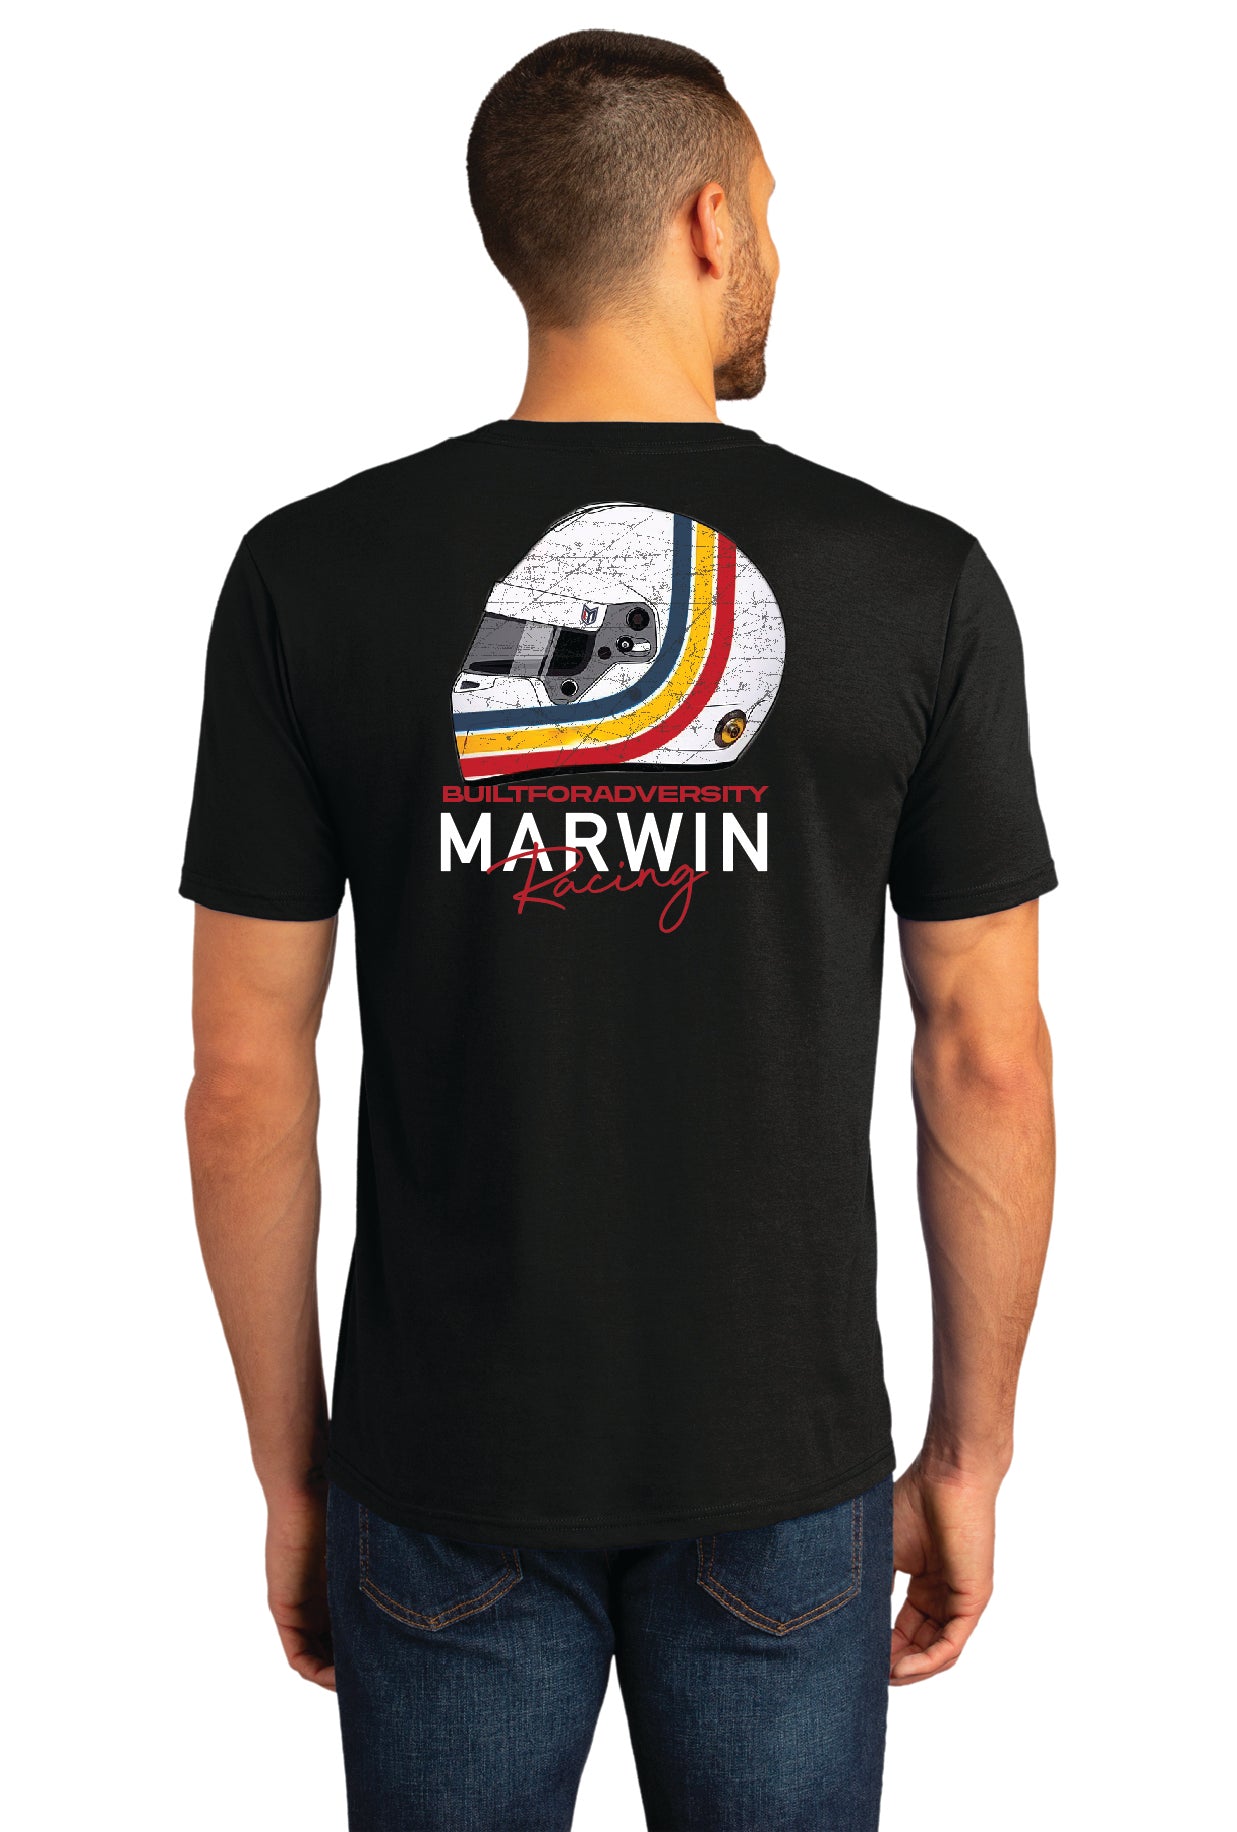 Marwin Access Racing Black Tee